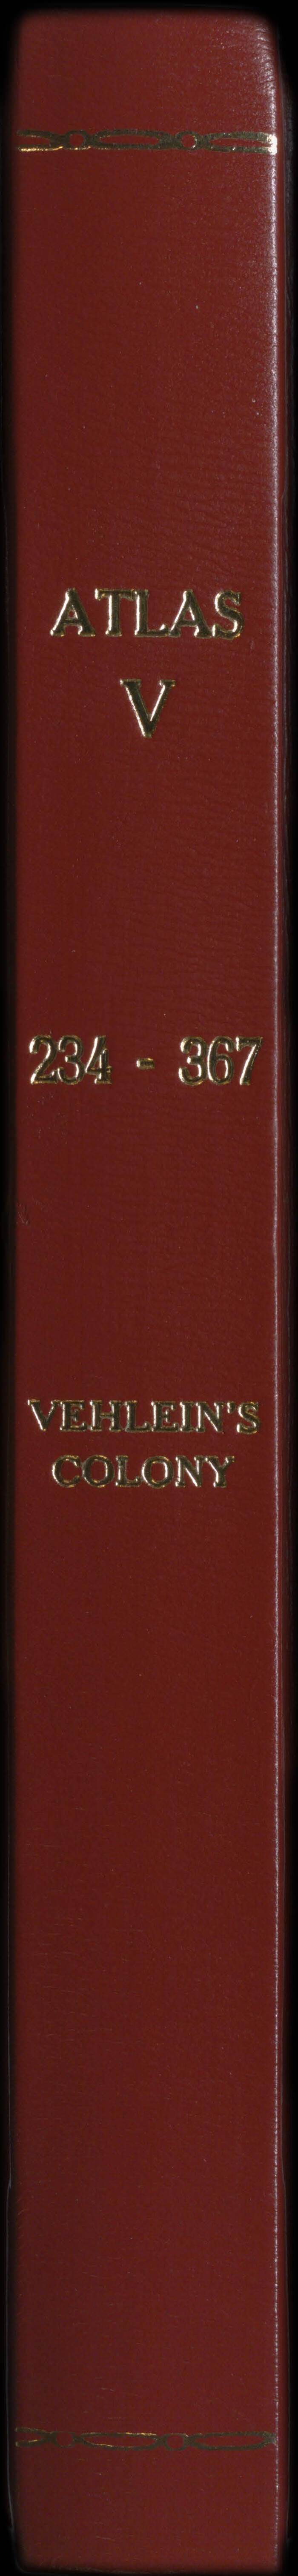 94540, Atlas V, 234-367, Vehlein's Colony, Historical Volumes